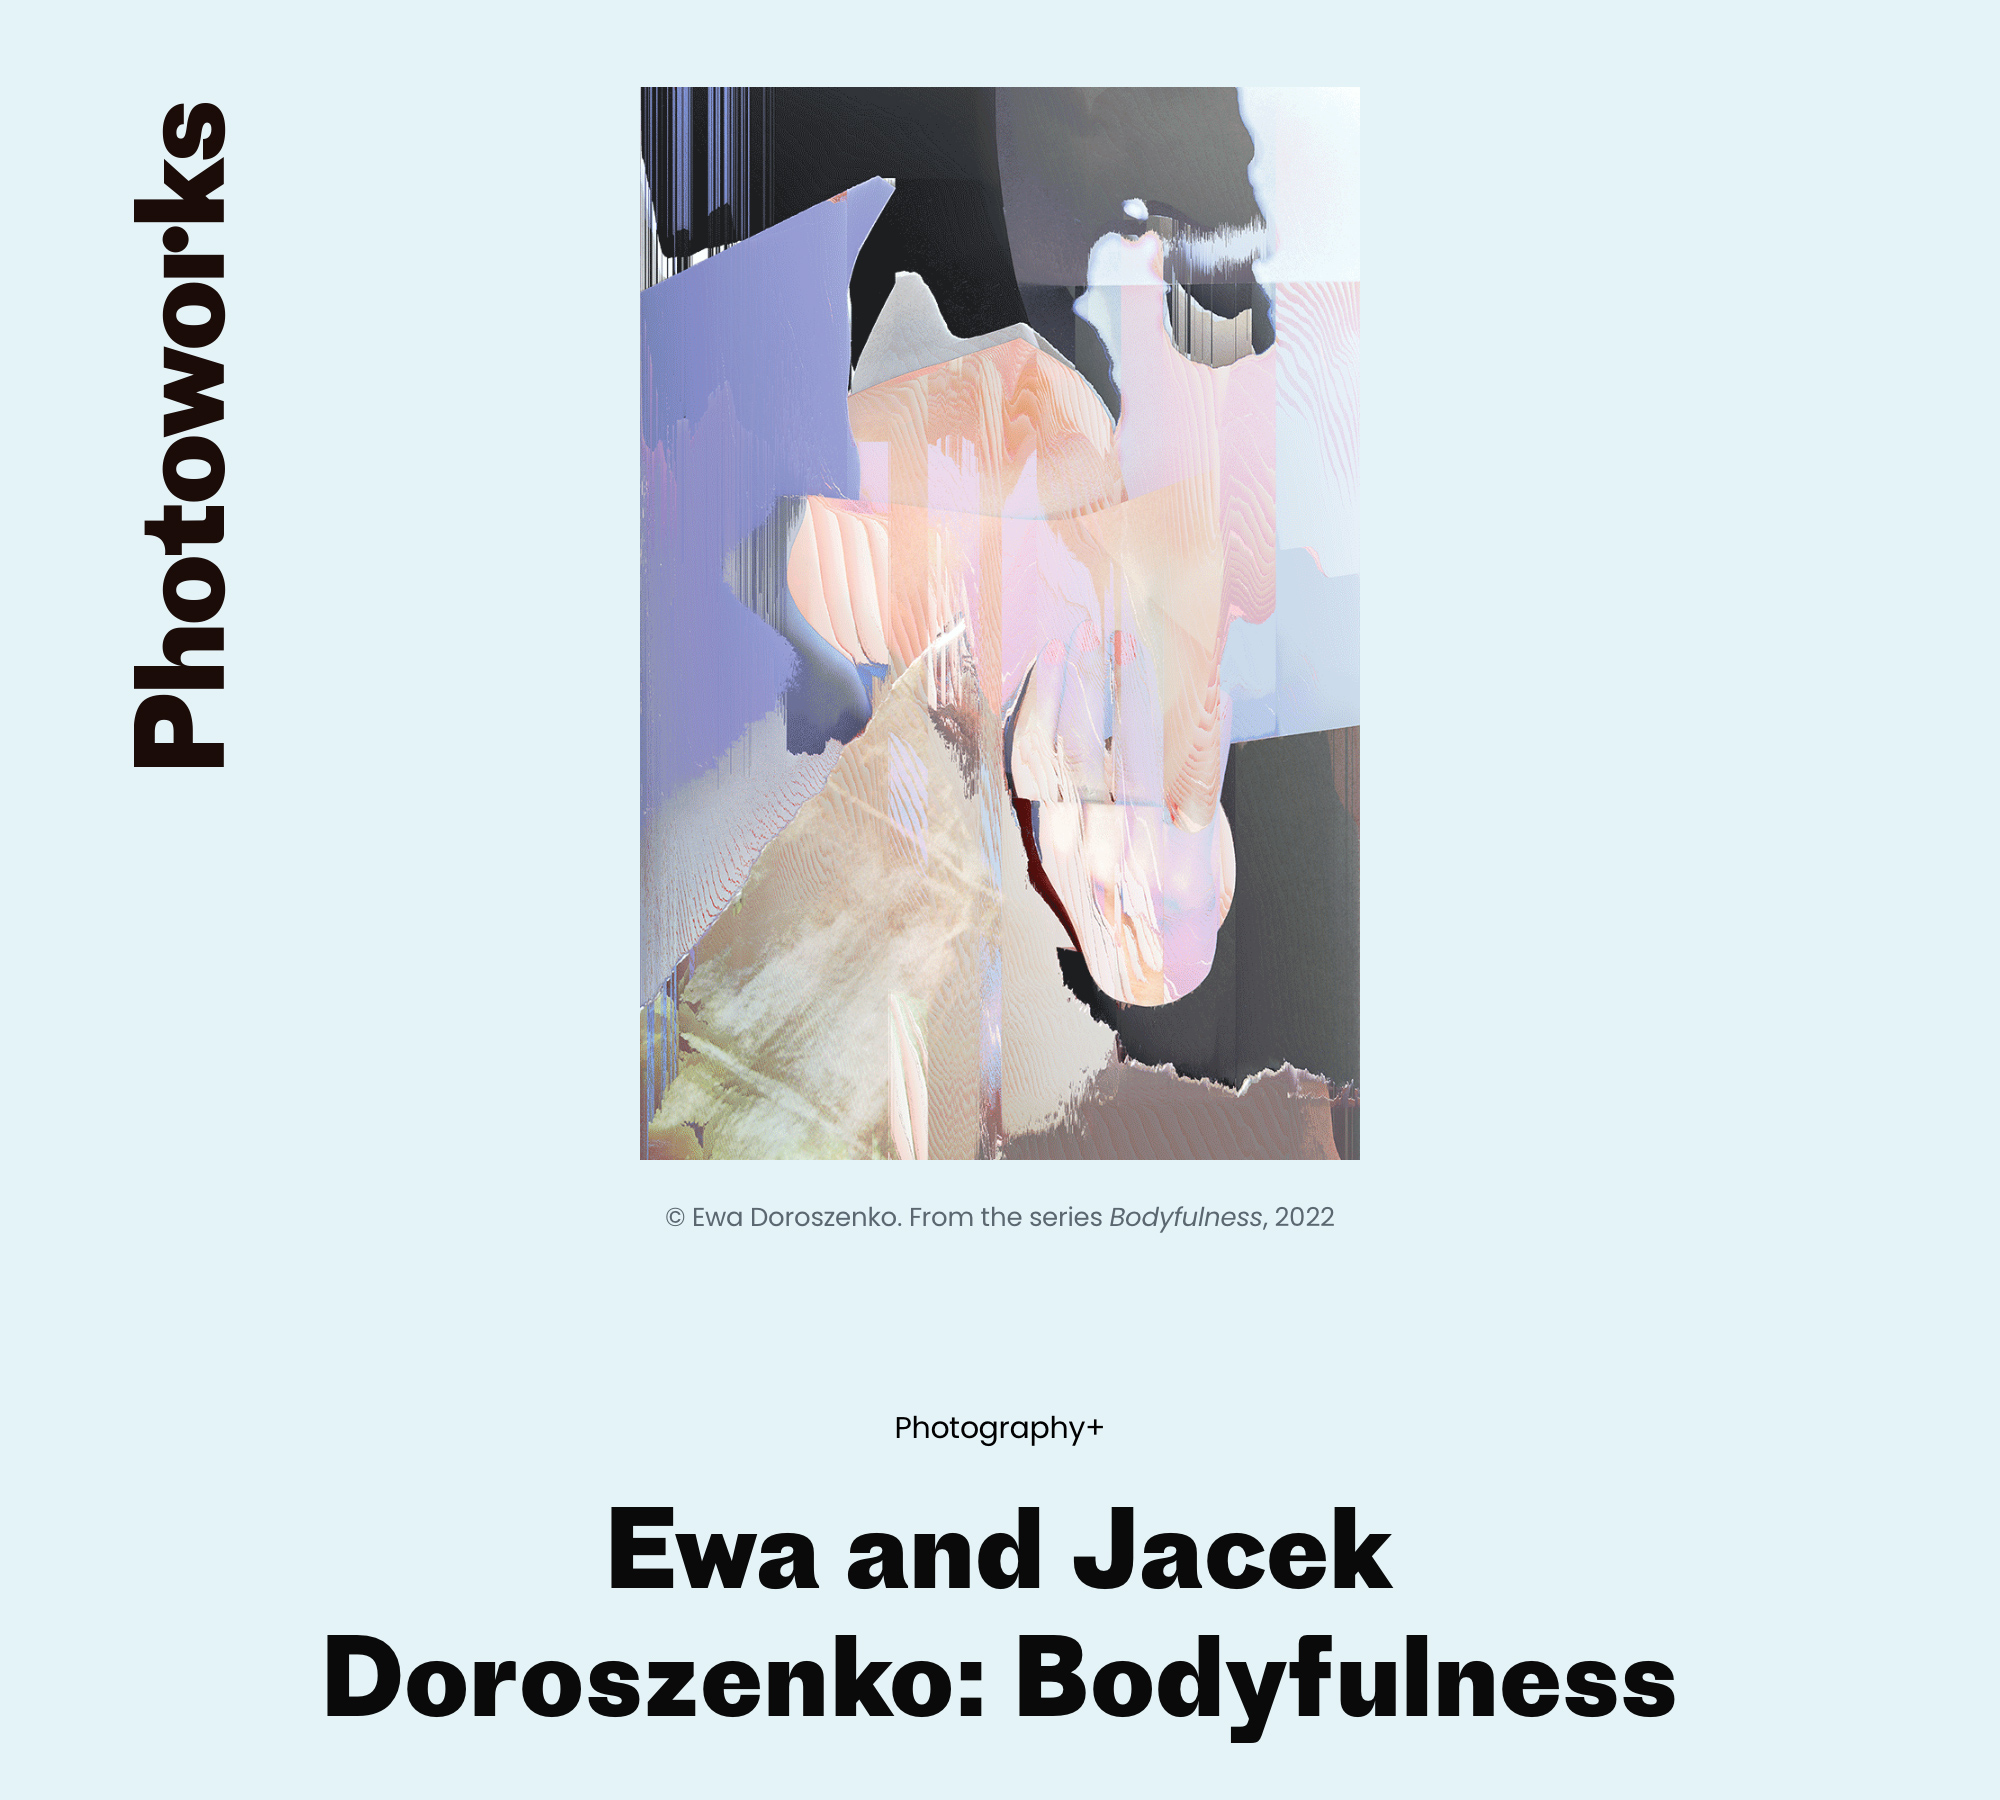 Ewa Doroszenko and Jacek Doroszenko Bodyfulness Photography+ Photoworks